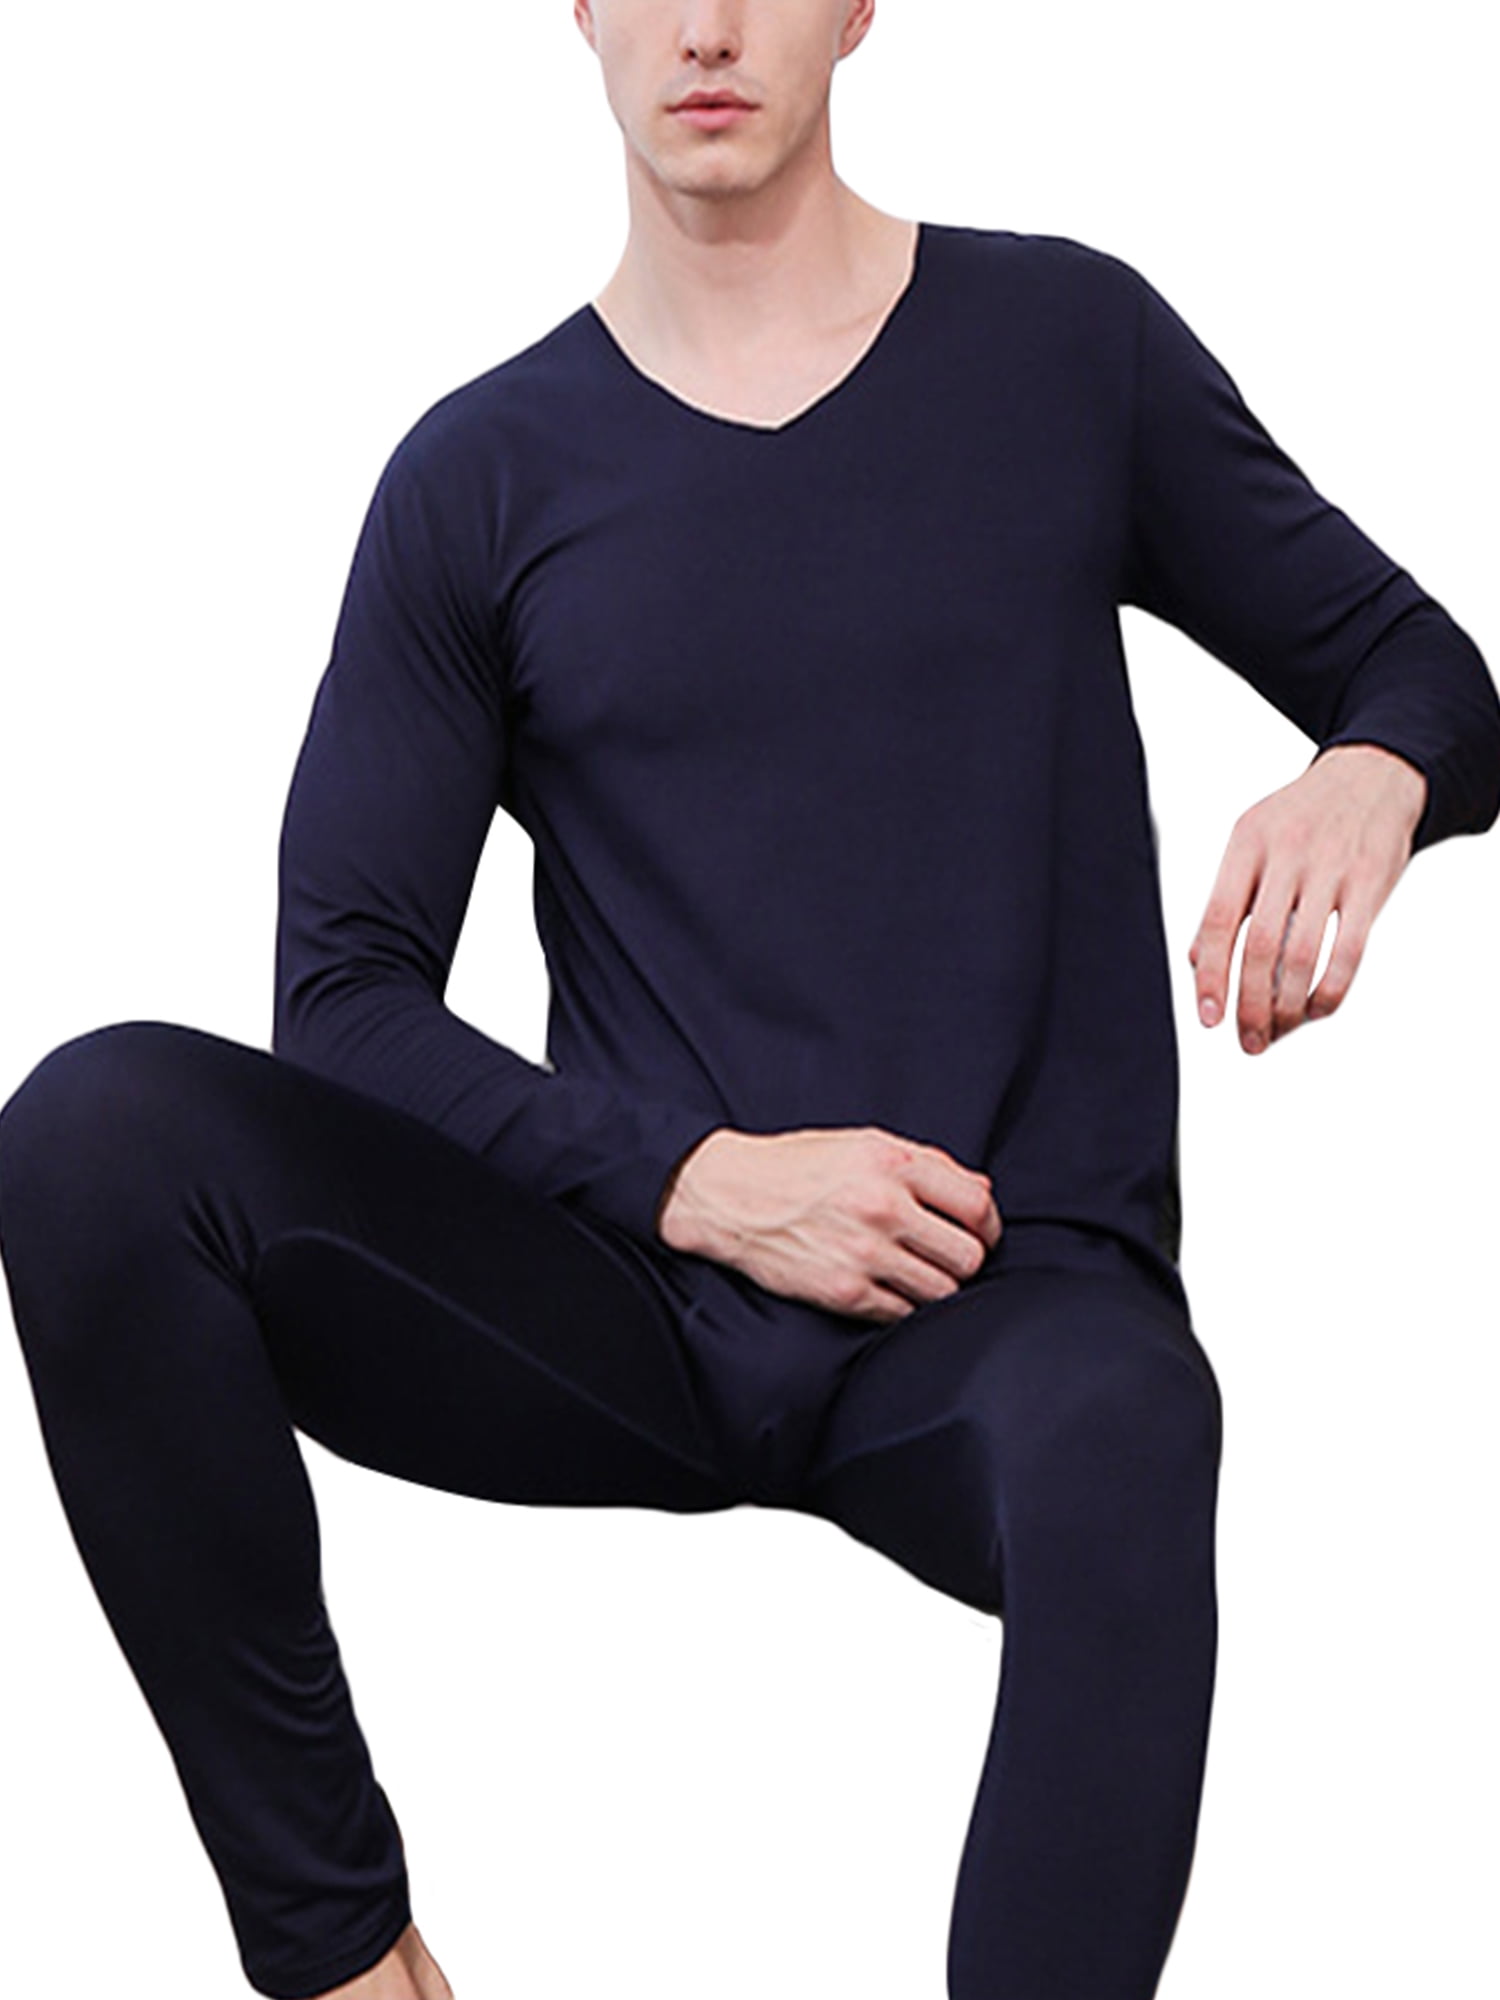 Mens Winter Thermal Underwear Pajamas Long Johns Tops Pants Nightwear Solid Fit